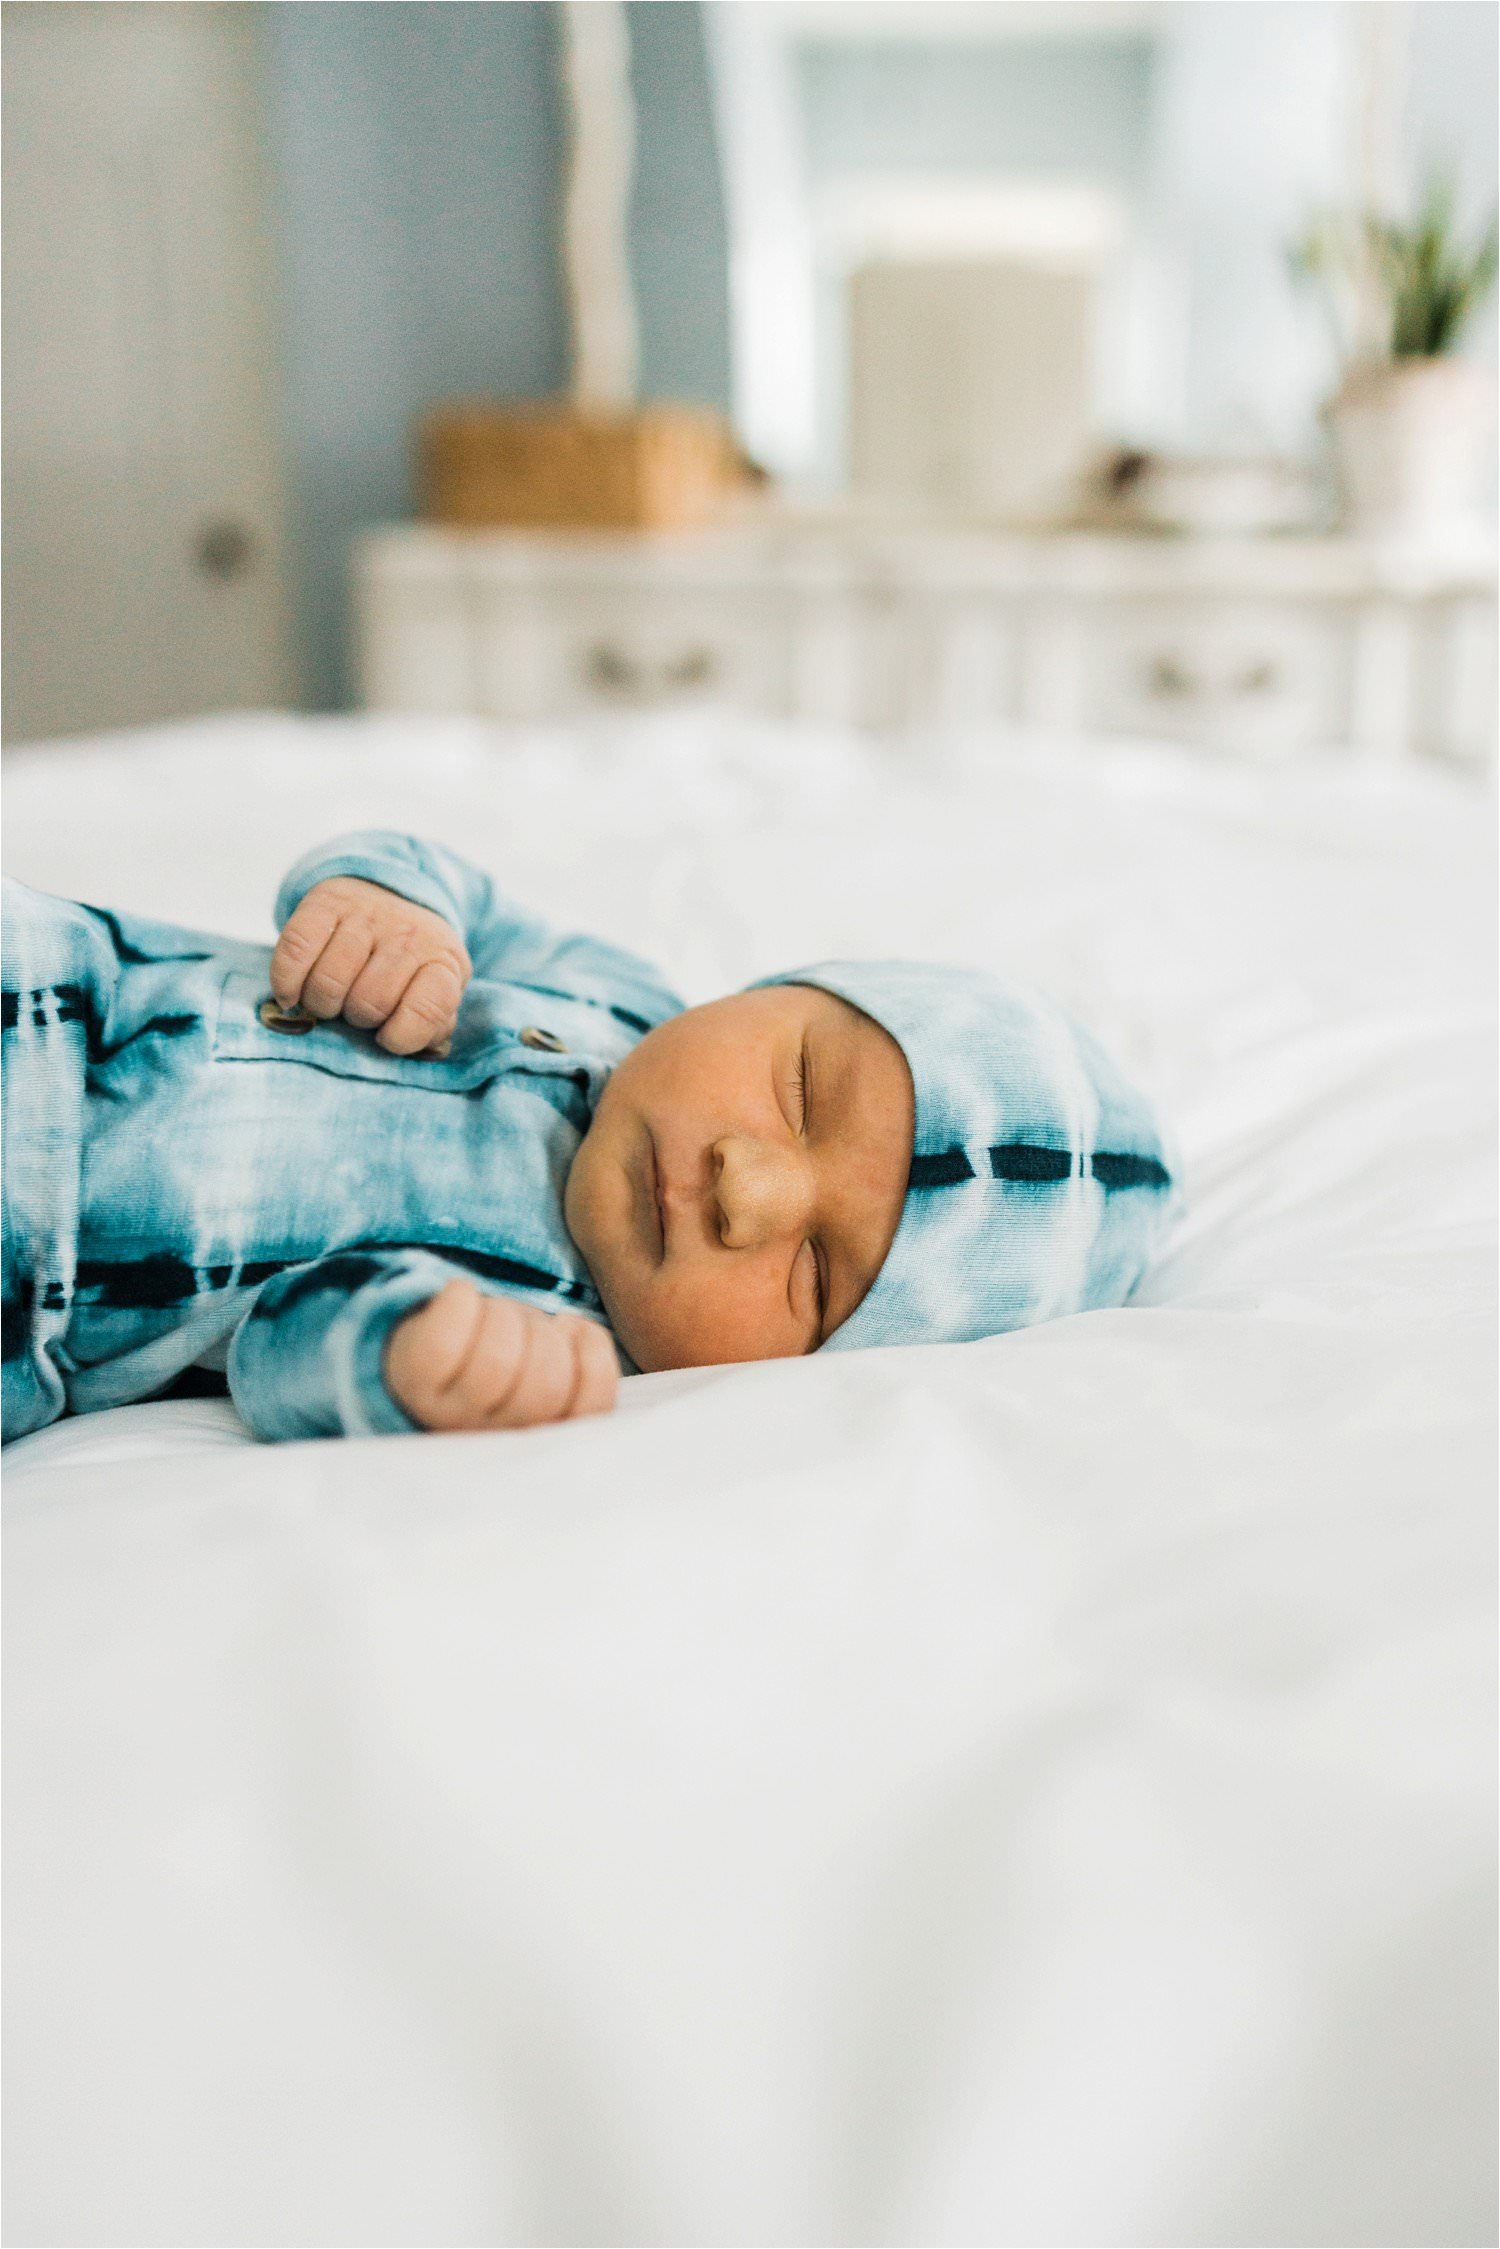 NEWBORN BABY BOY IN SLEEPER AND HAT